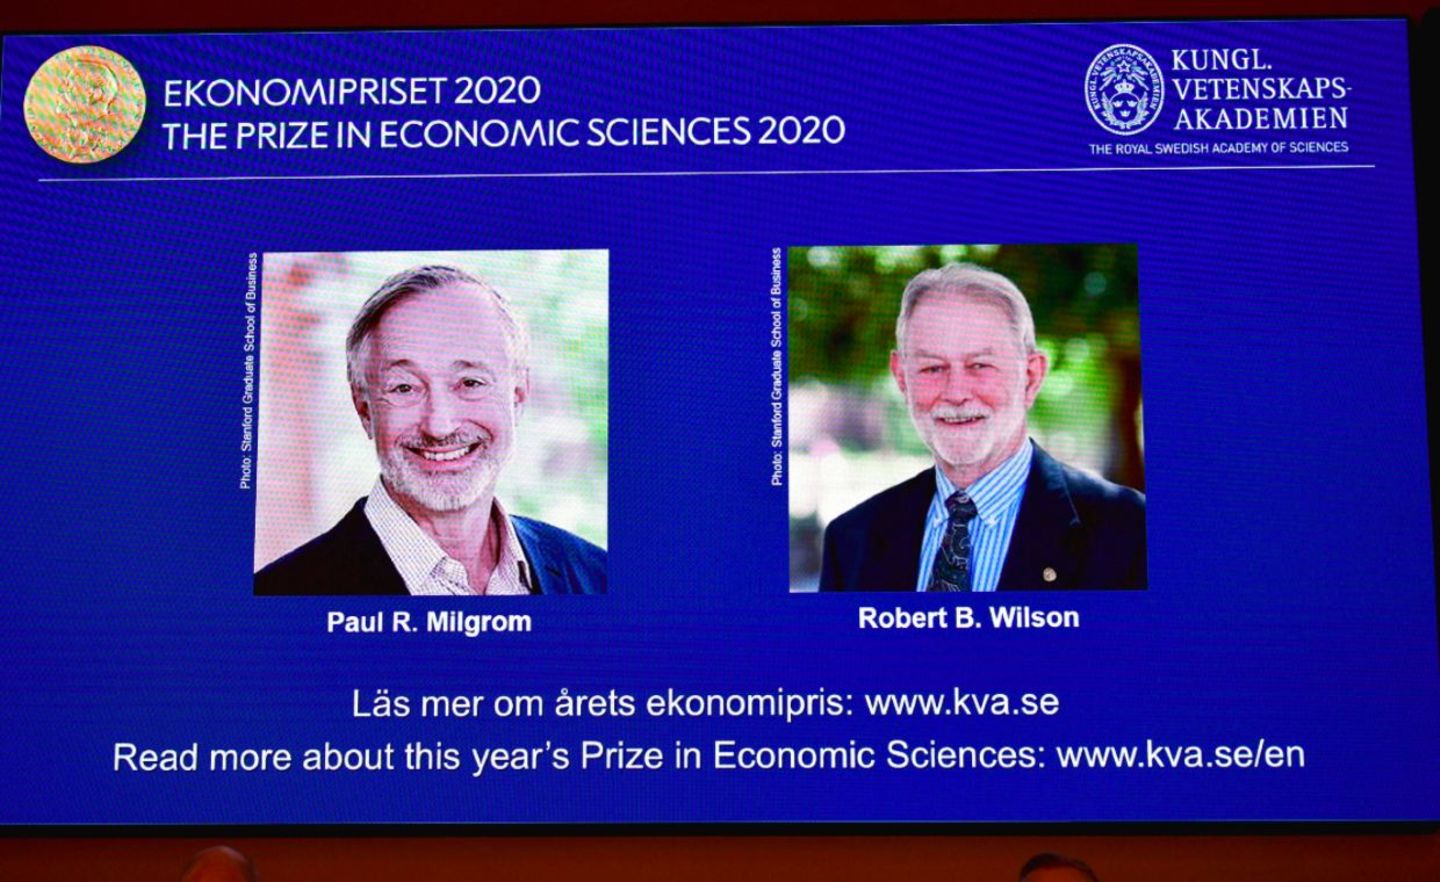 Paul R. Milgrom und Robert B. Wilson wurden für ihren Beitrag zur Auktionstheorie mit dem Wirtschaftsnobelpreis geehrt